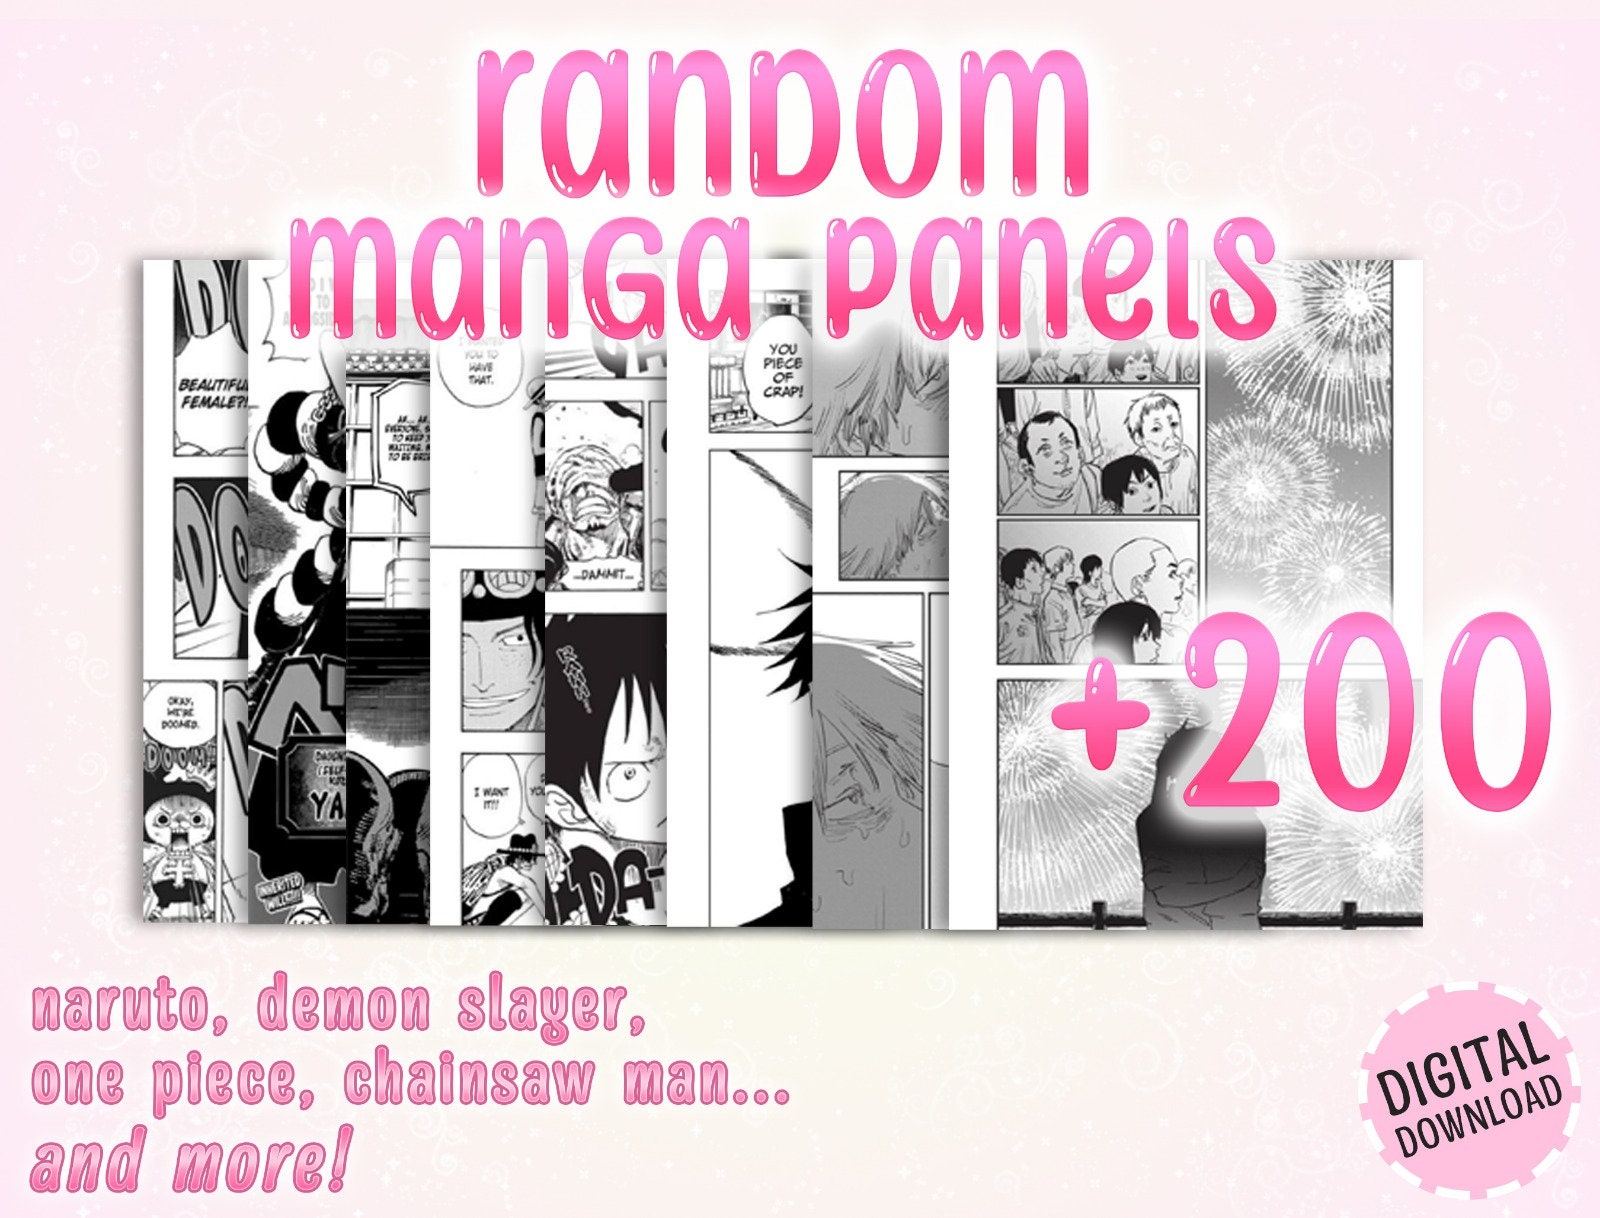 Oficina Steam::Mahou Shoujo ni Akogarete Manga Panels